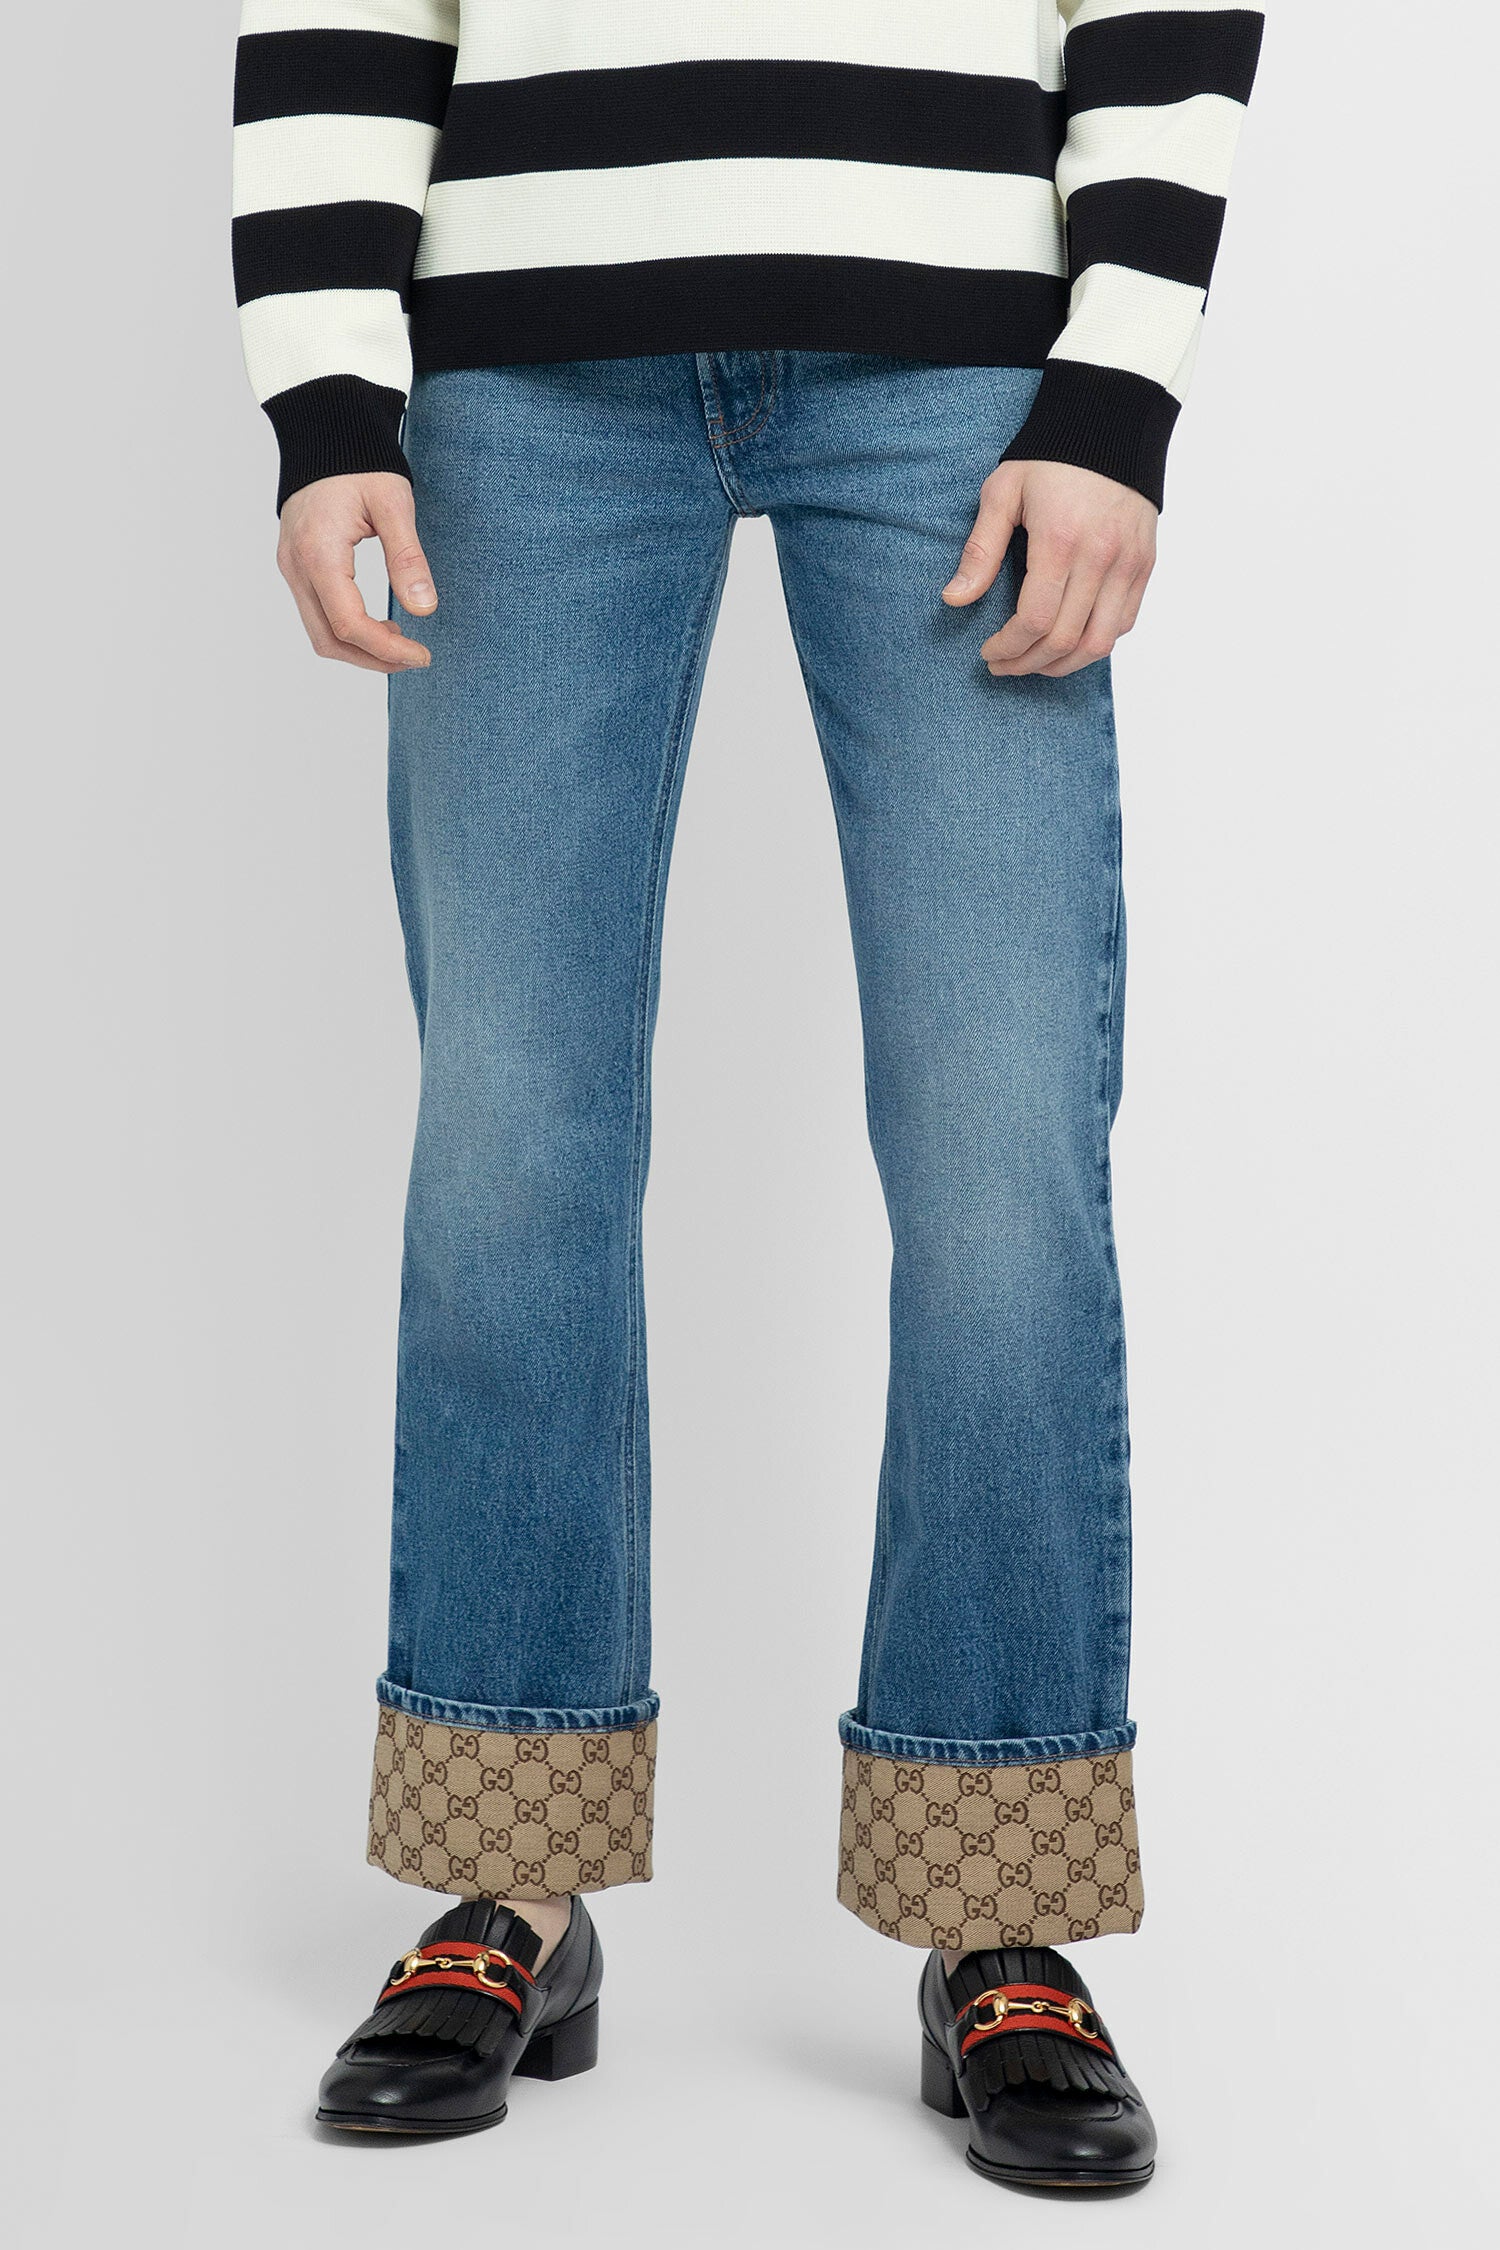 Gucci Man Jeans | ModeSens